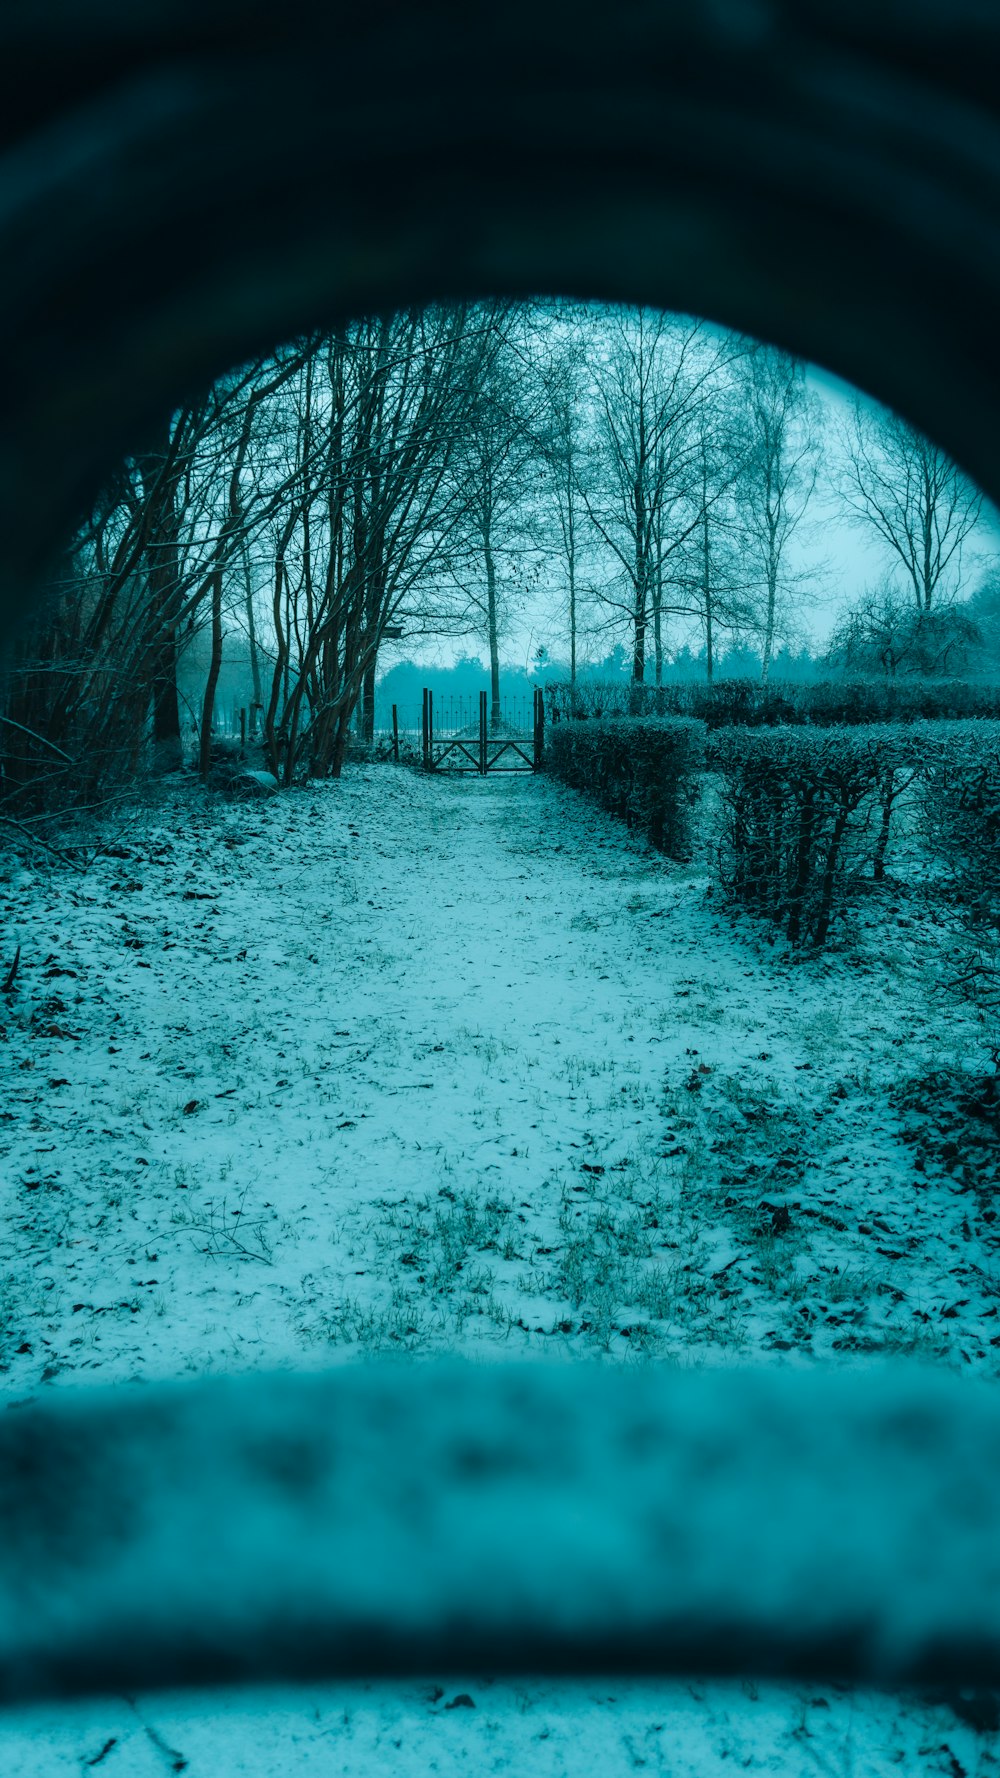 a view of a path through a snowy park